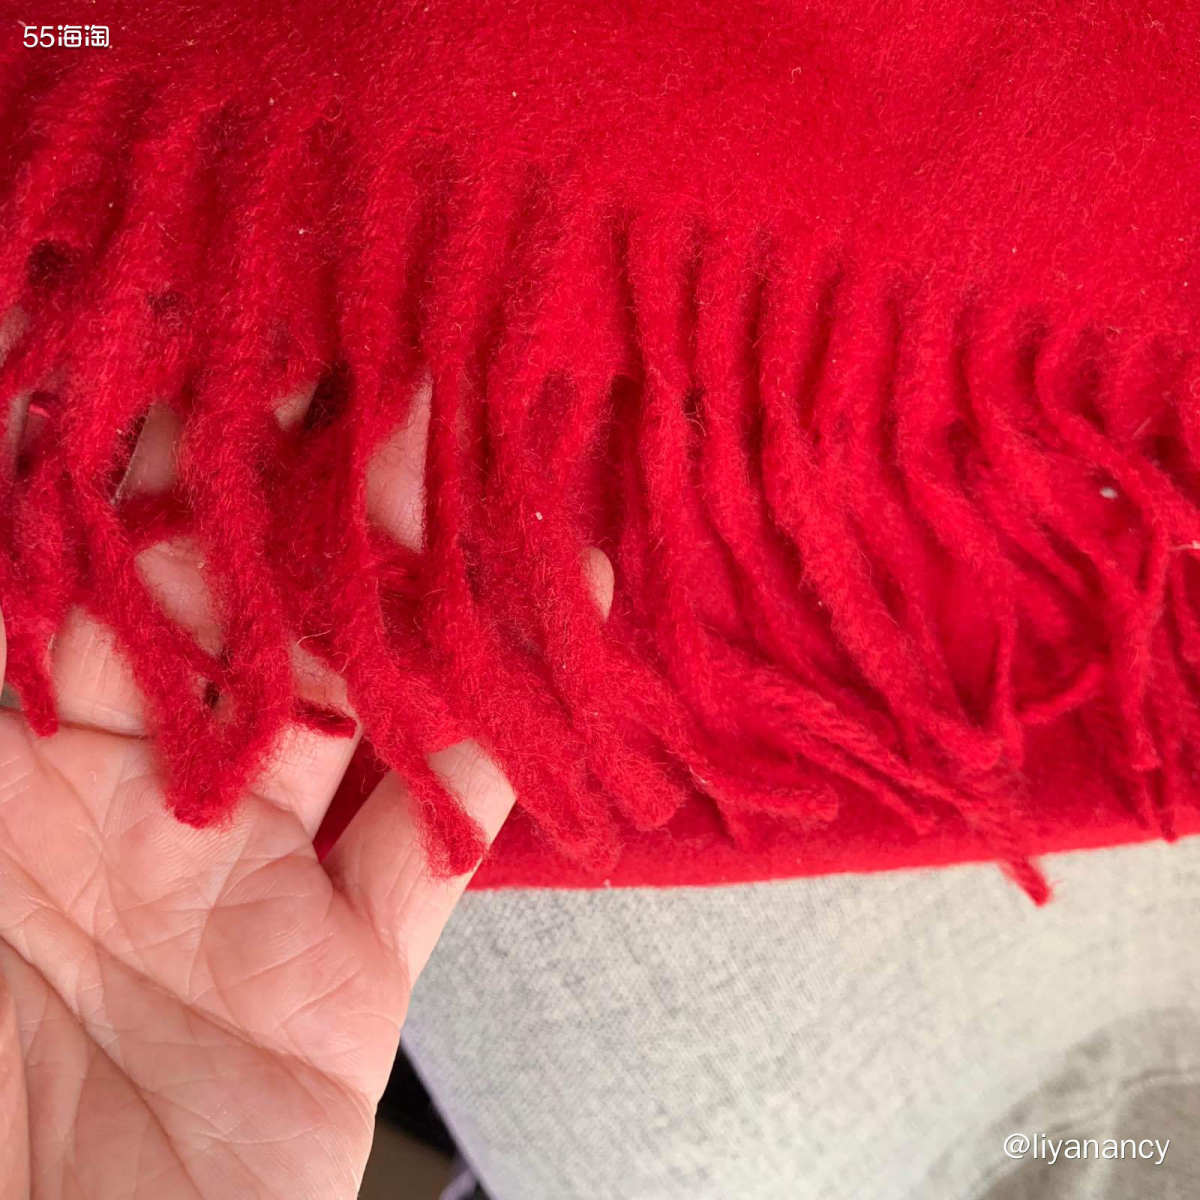 保暖神器** ysl羊毛围巾  ✨这款围巾已经买了好几年了，